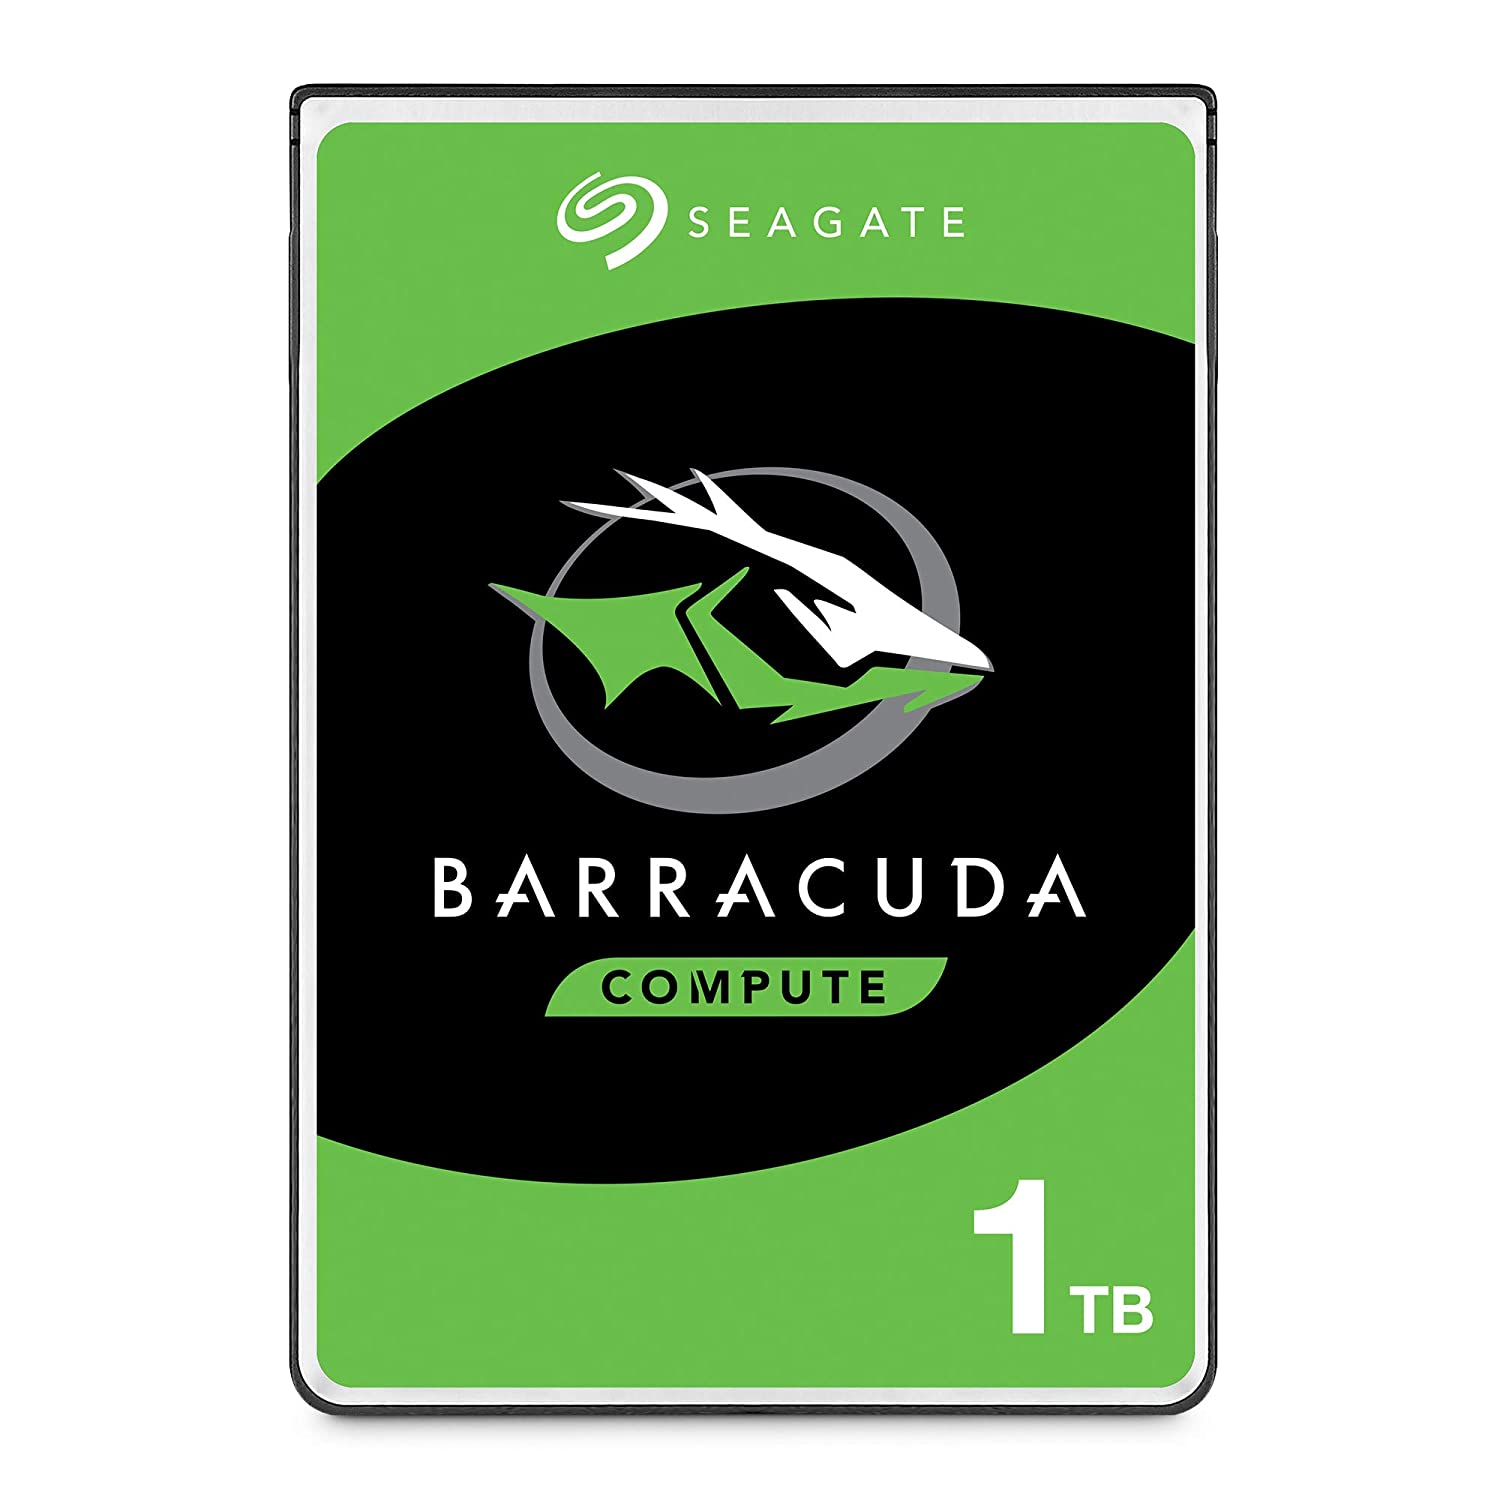 Seagate Barracuda ST1000LM048 1TB HDD